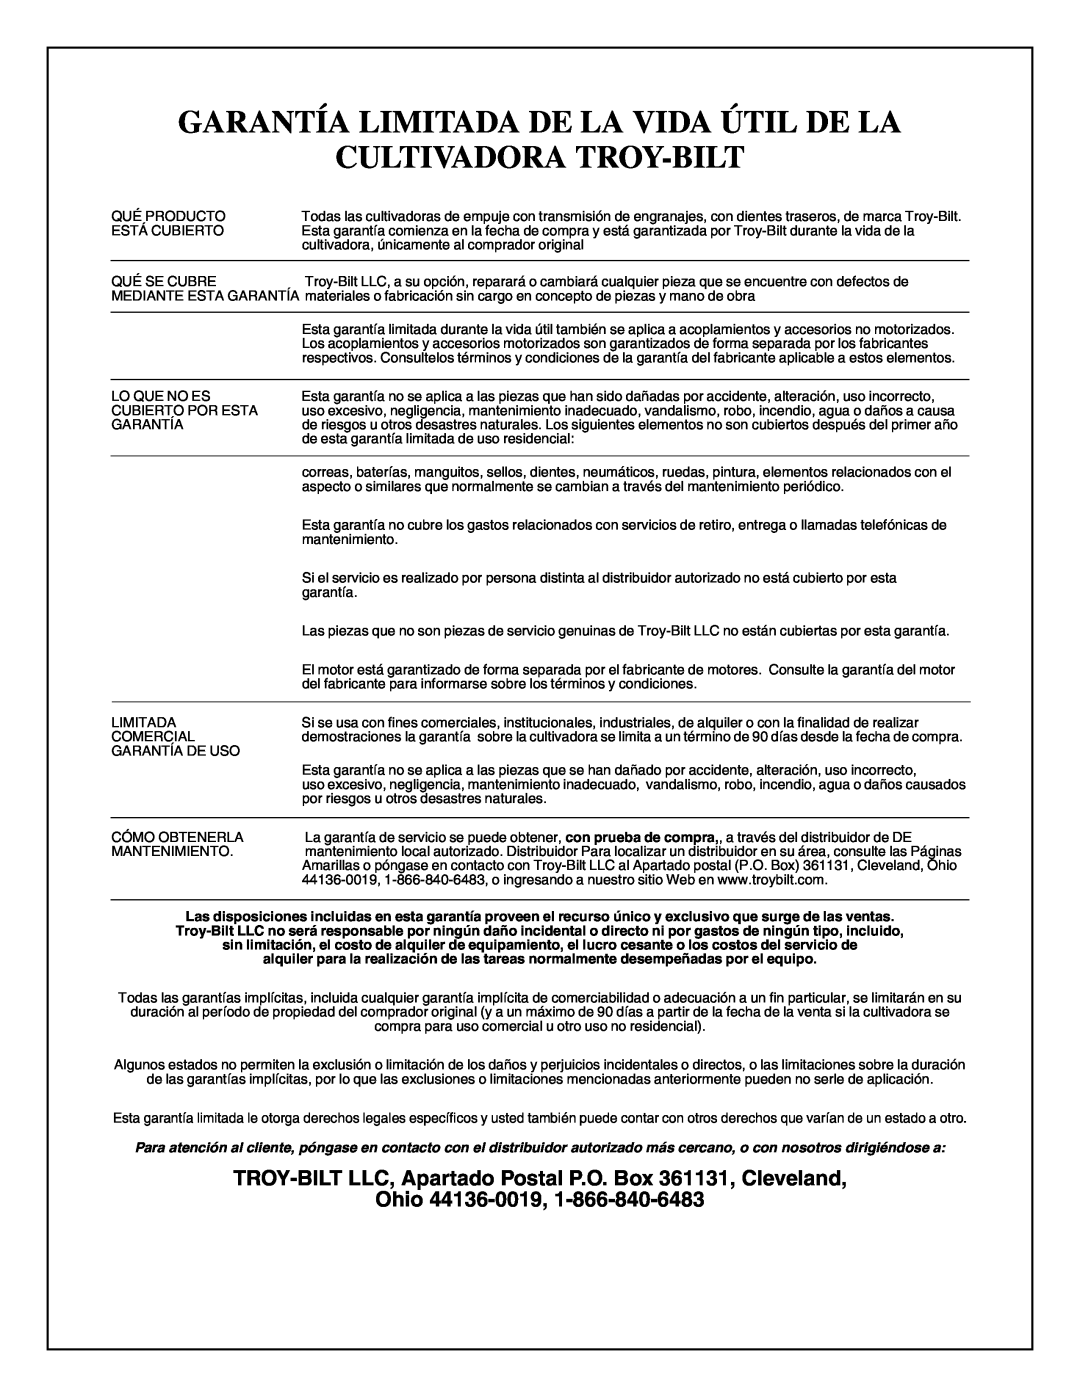 Troy-Bilt 645A, 643D, 643B manual Garantía Limitada De La Vida Útil De La Cultivadora Troy-Bilt, Ohio 